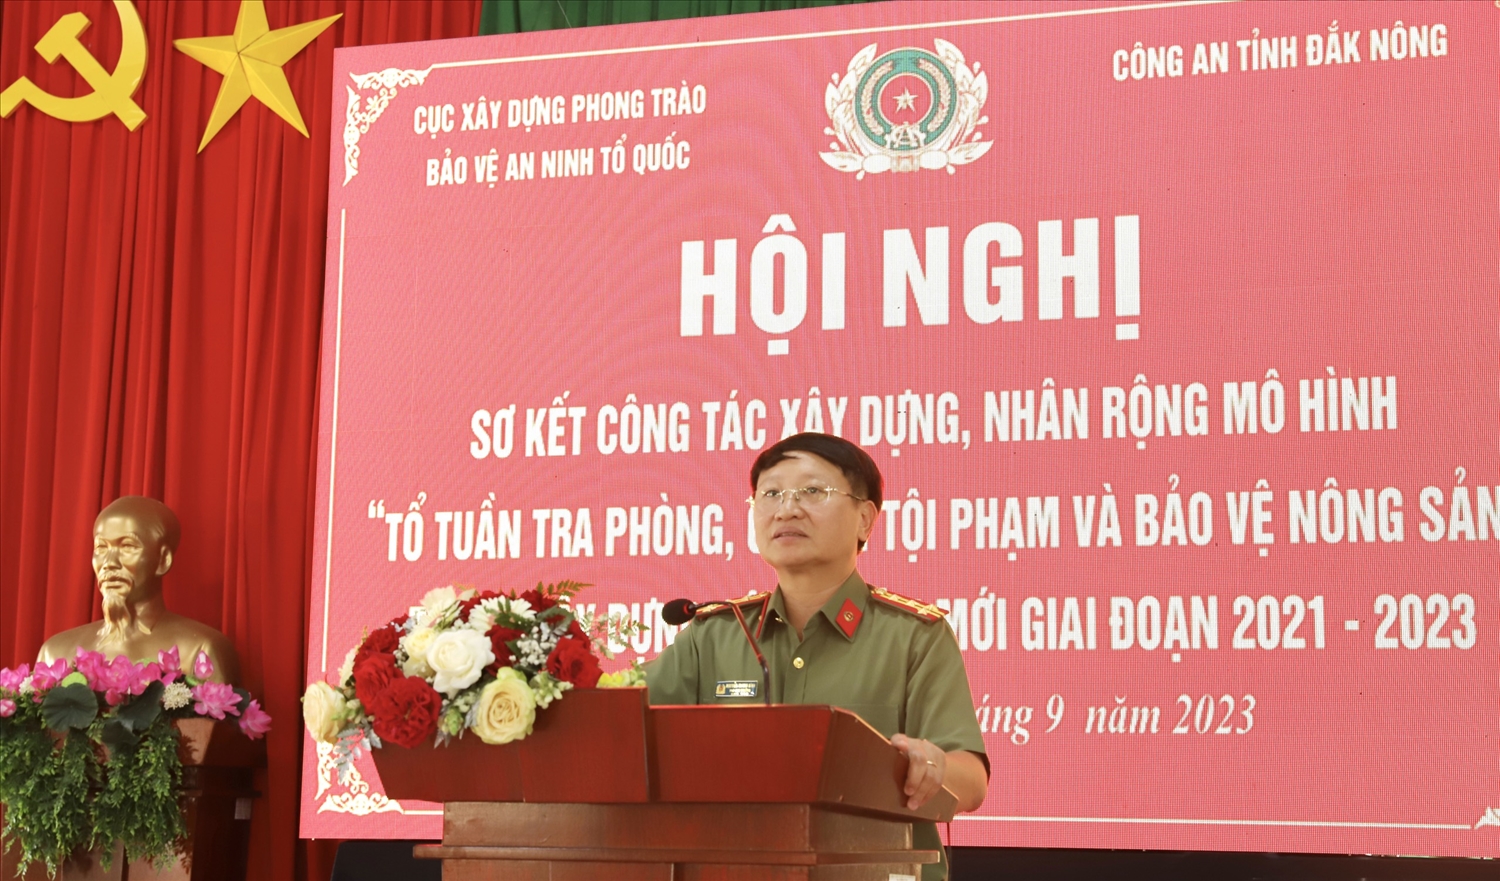 Đại tá Nguyễn Thanh Bình, Phó Cục trưởng Cục Xây dựng phong trào toàn dân bảo vệ ANTQ phát biểu tại hội nghị